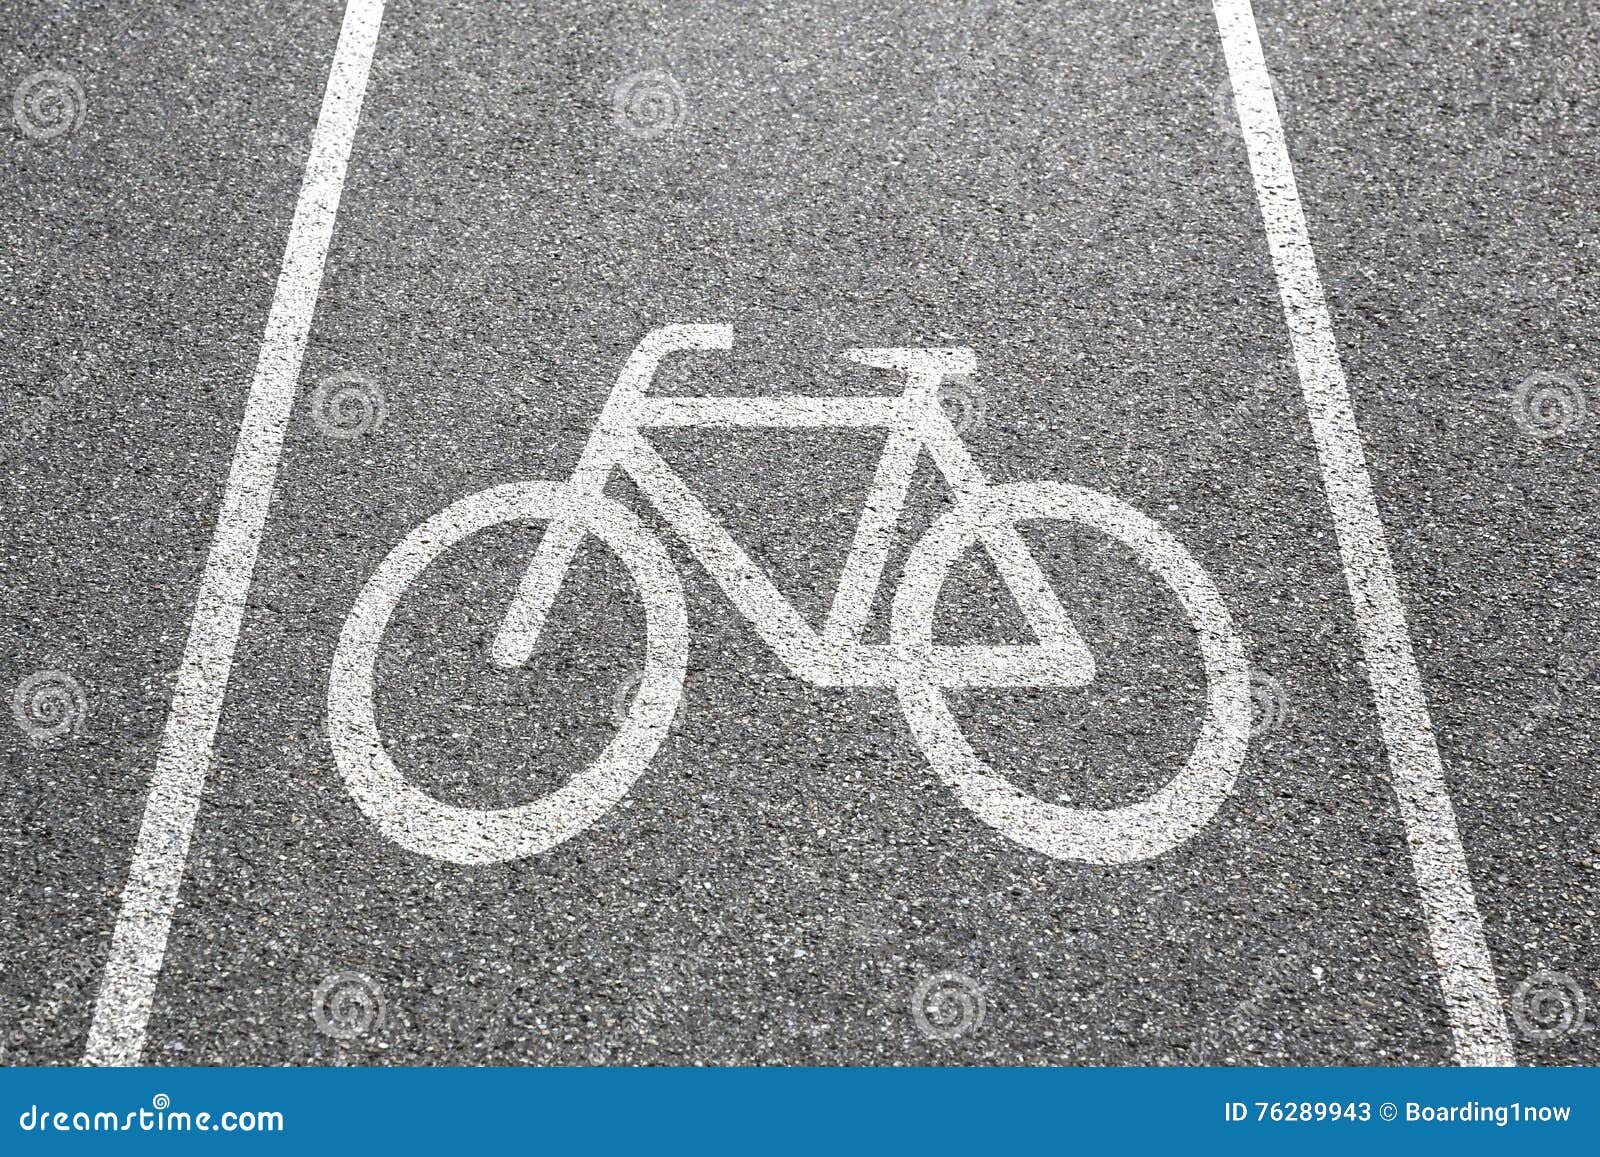 bike lane path way cycle bicycle road traffic town